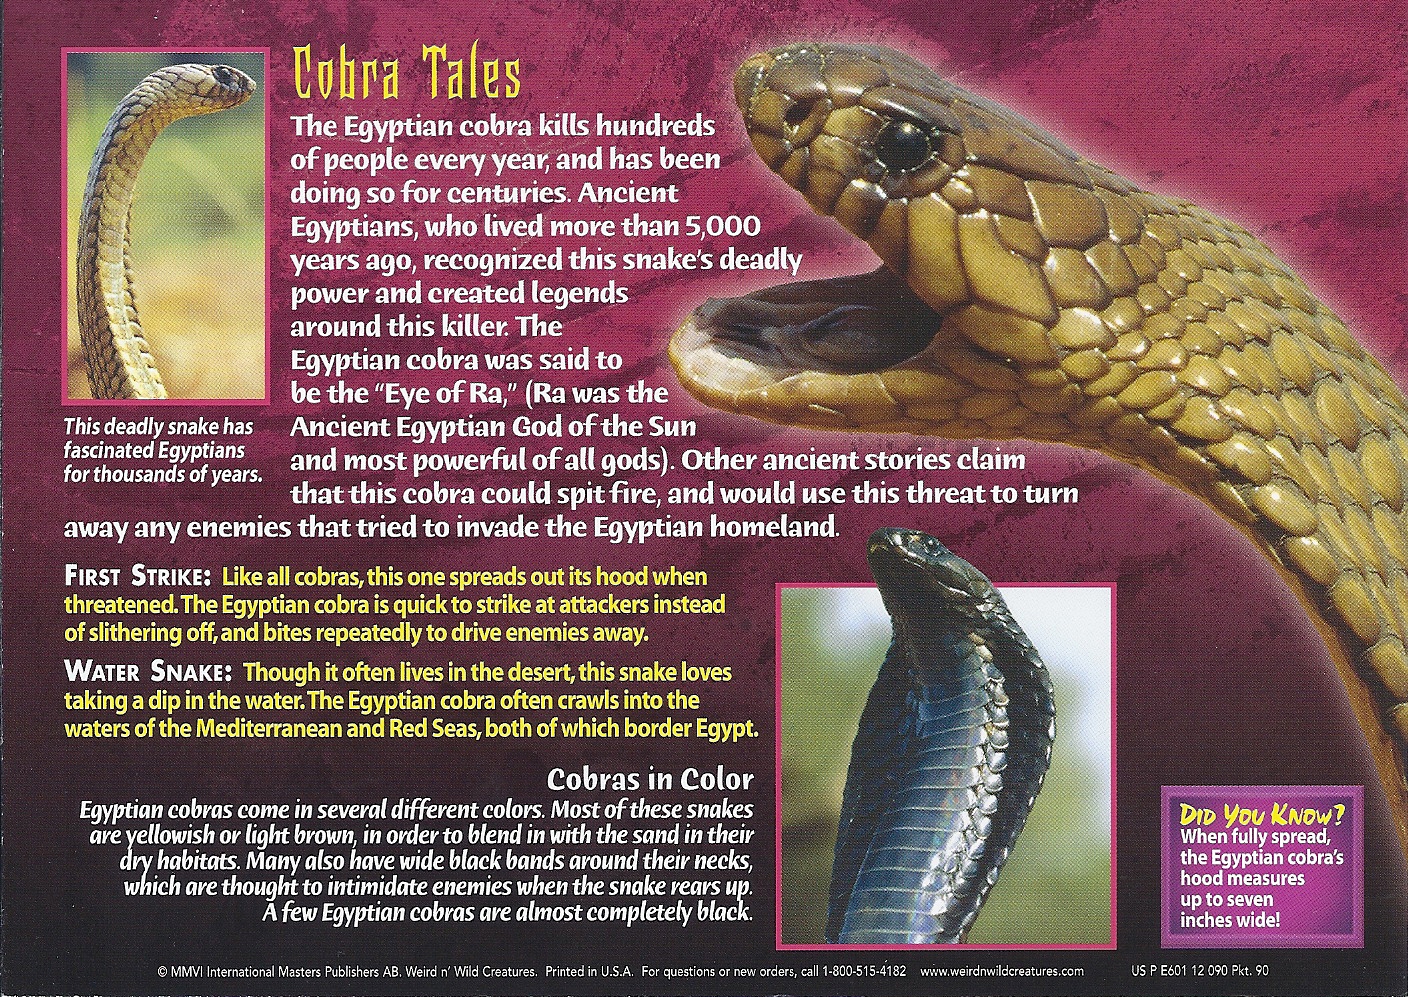 Wild Cobra